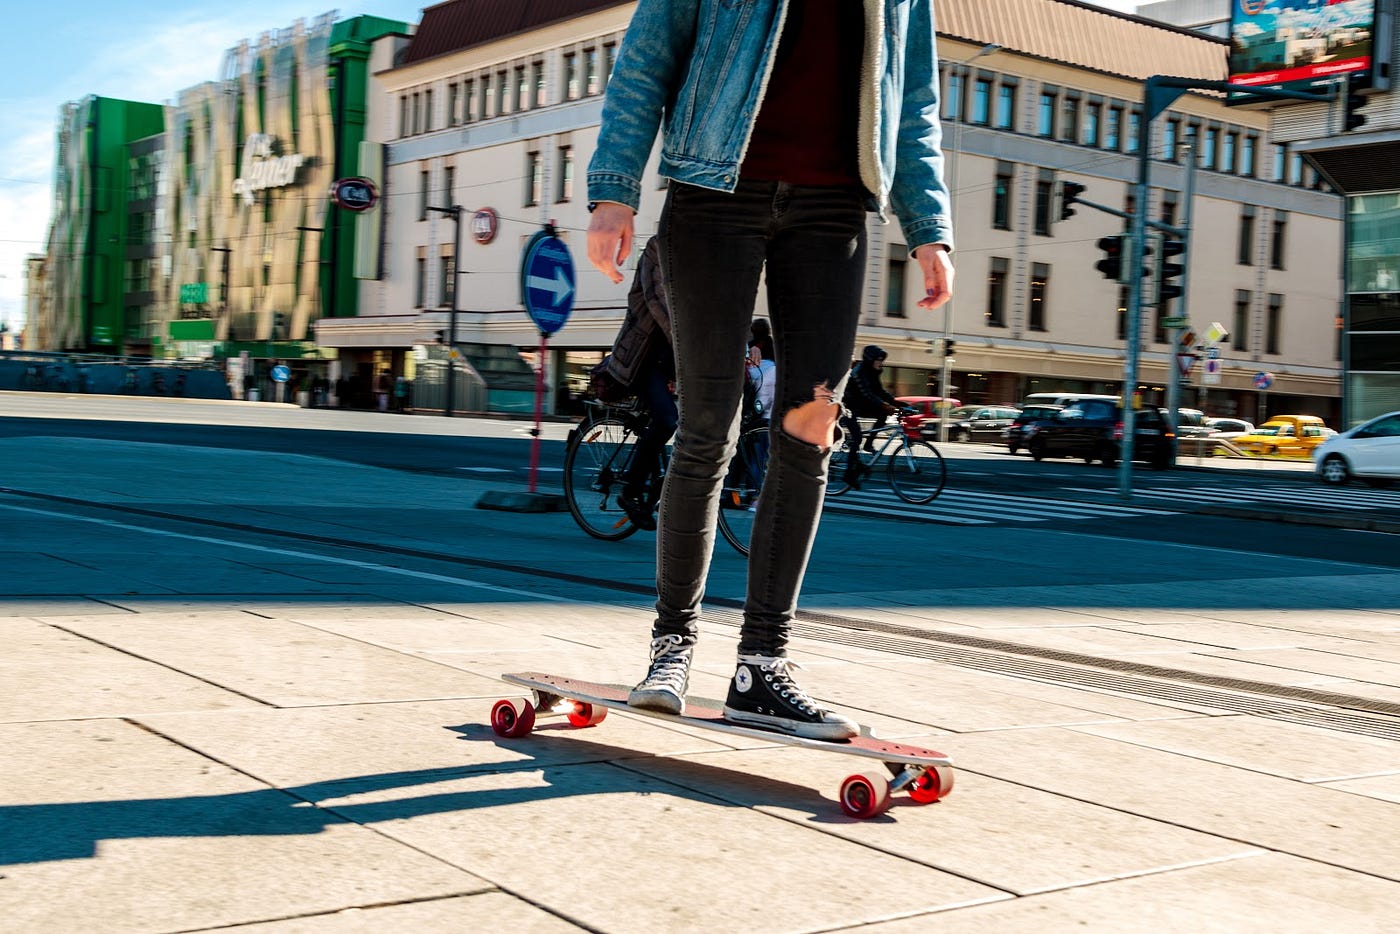 Spielzeug auf der Straße?. Skateboards, Scooter und Co. — Dürfen… | by  Carina Traxler | STEIERMARK RADMOBIL | Medium